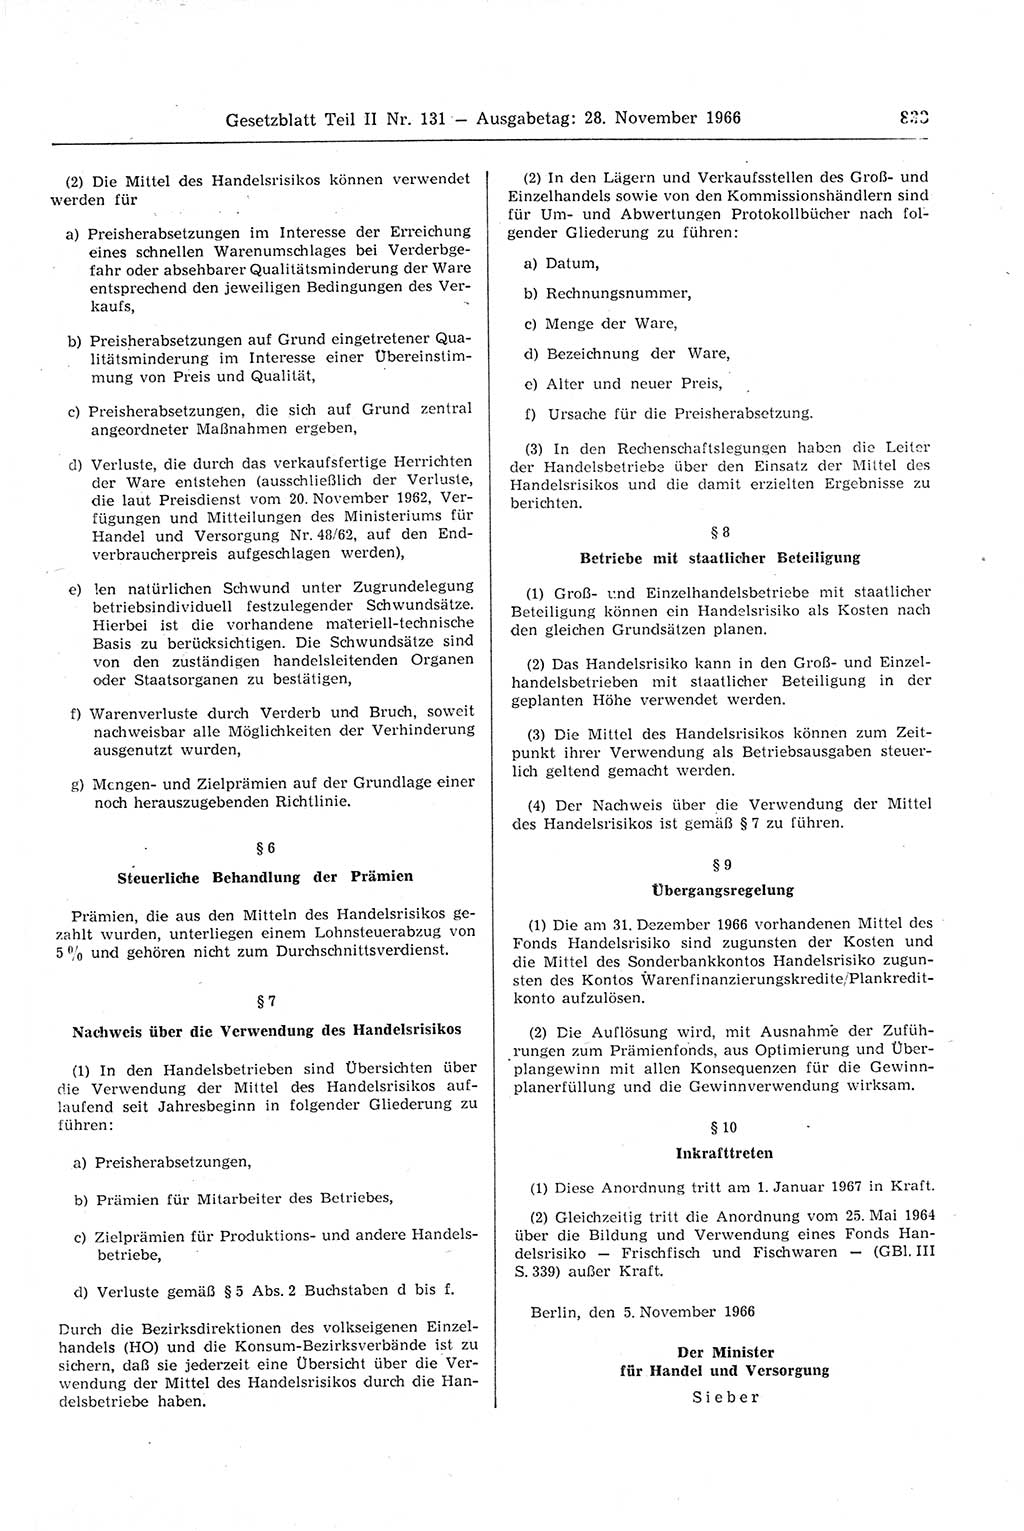 Gesetzblatt (GBl.) der Deutschen Demokratischen Republik (DDR) Teil ⅠⅠ 1966, Seite 833 (GBl. DDR ⅠⅠ 1966, S. 833)